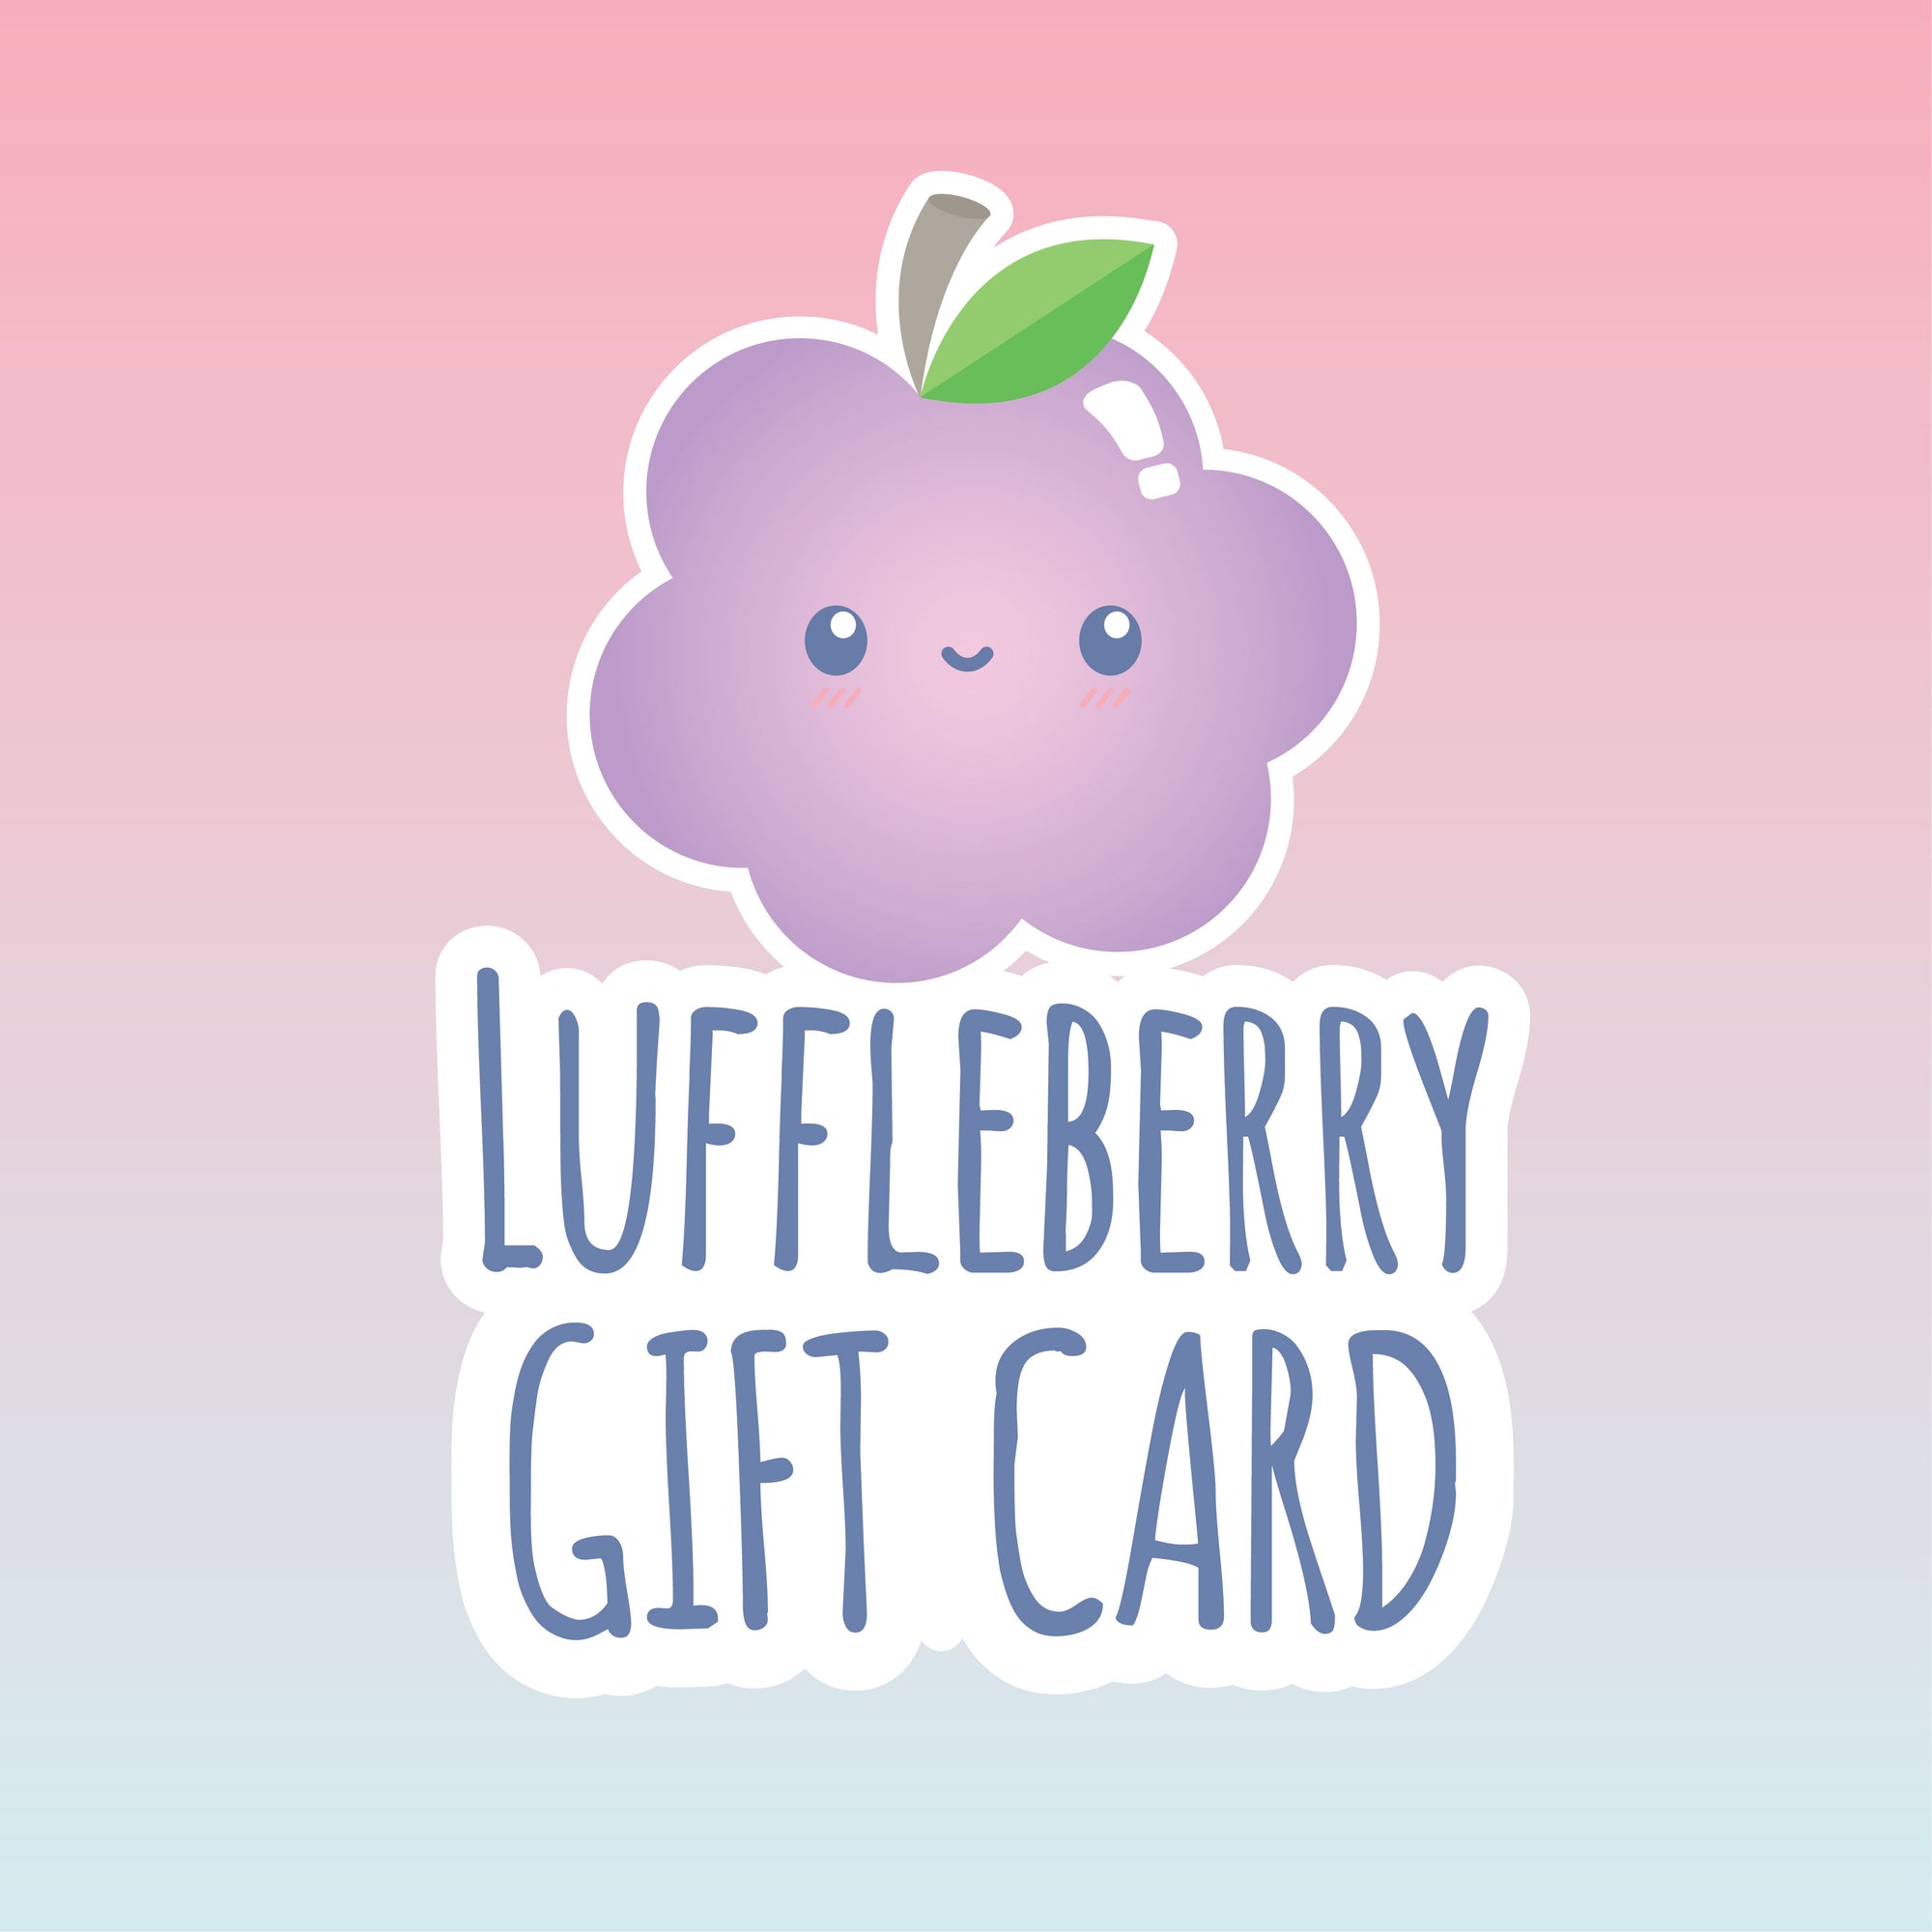 Luffleberry Gift Card